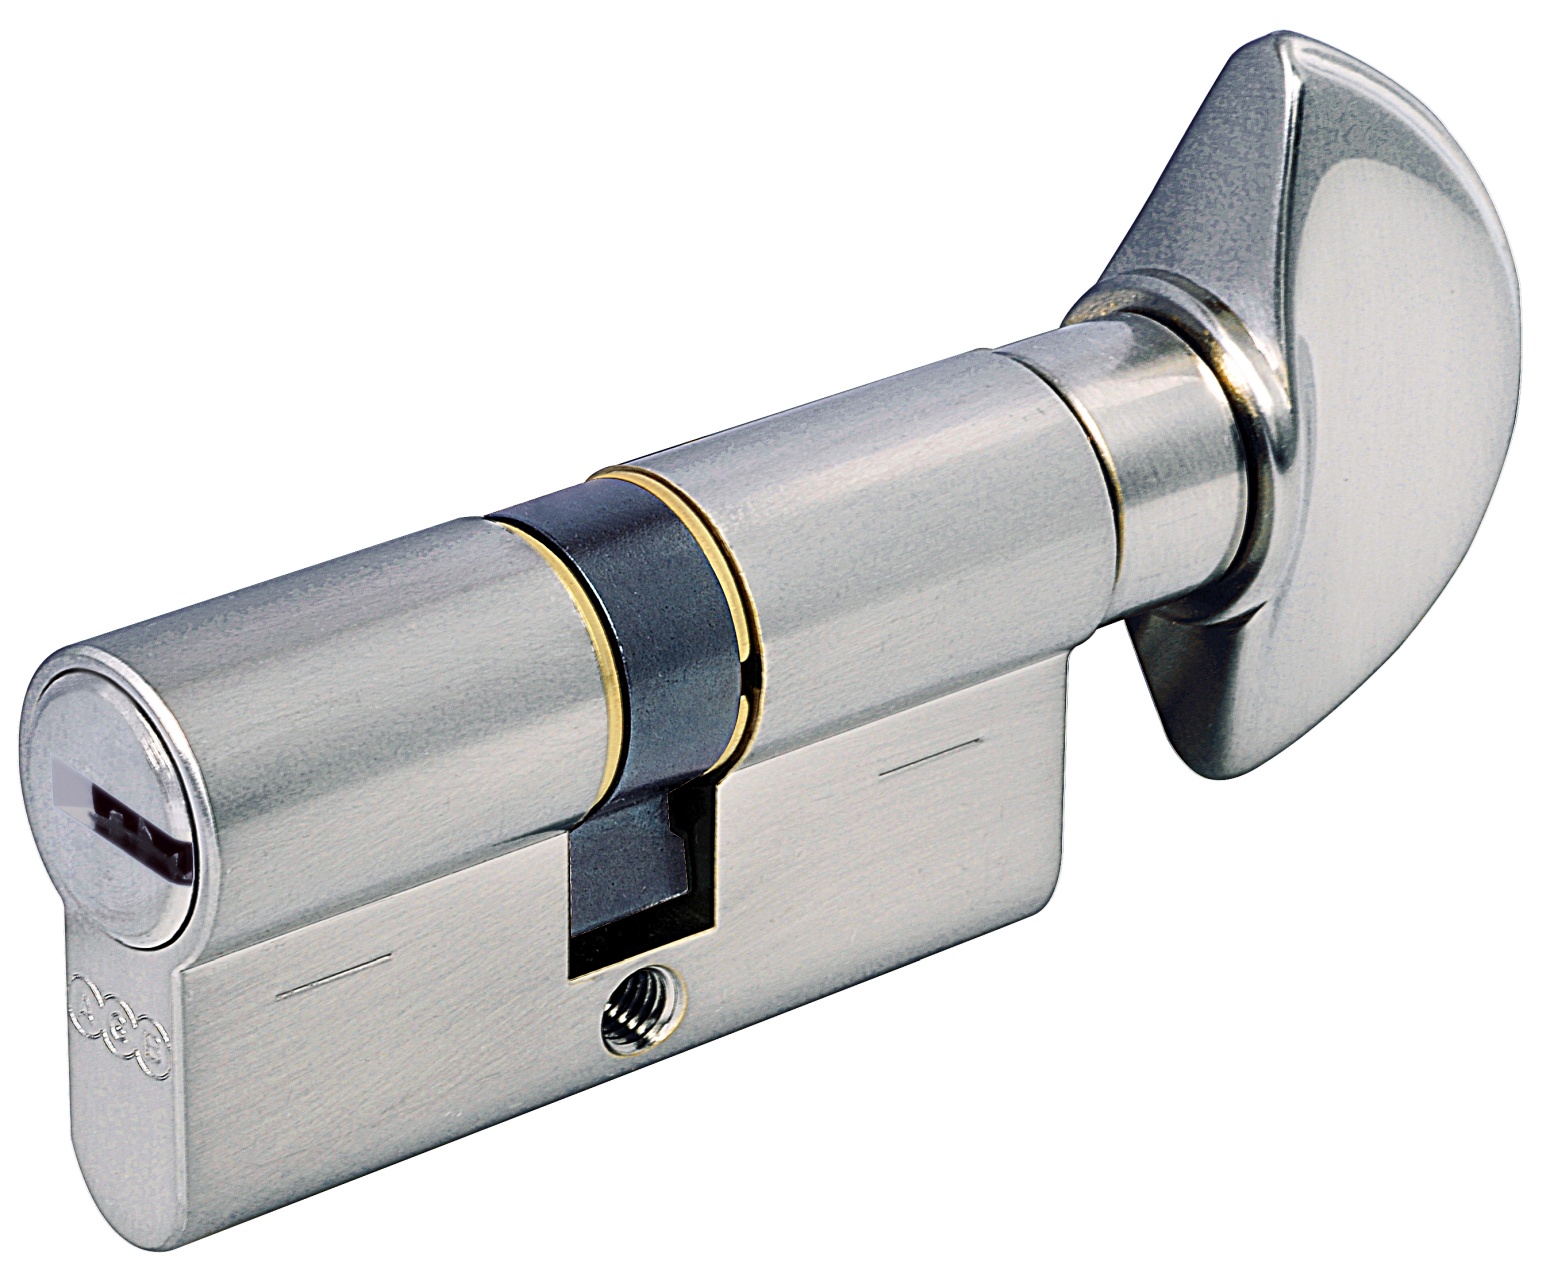 AGB -  Cilindro SCUDO 5000 PS frizionato anti bamping con chiave e pomolo ka - a chiave uguale - col. NICHELATO OPACO - lunghezza 90 - misura 35 - 10 - 45